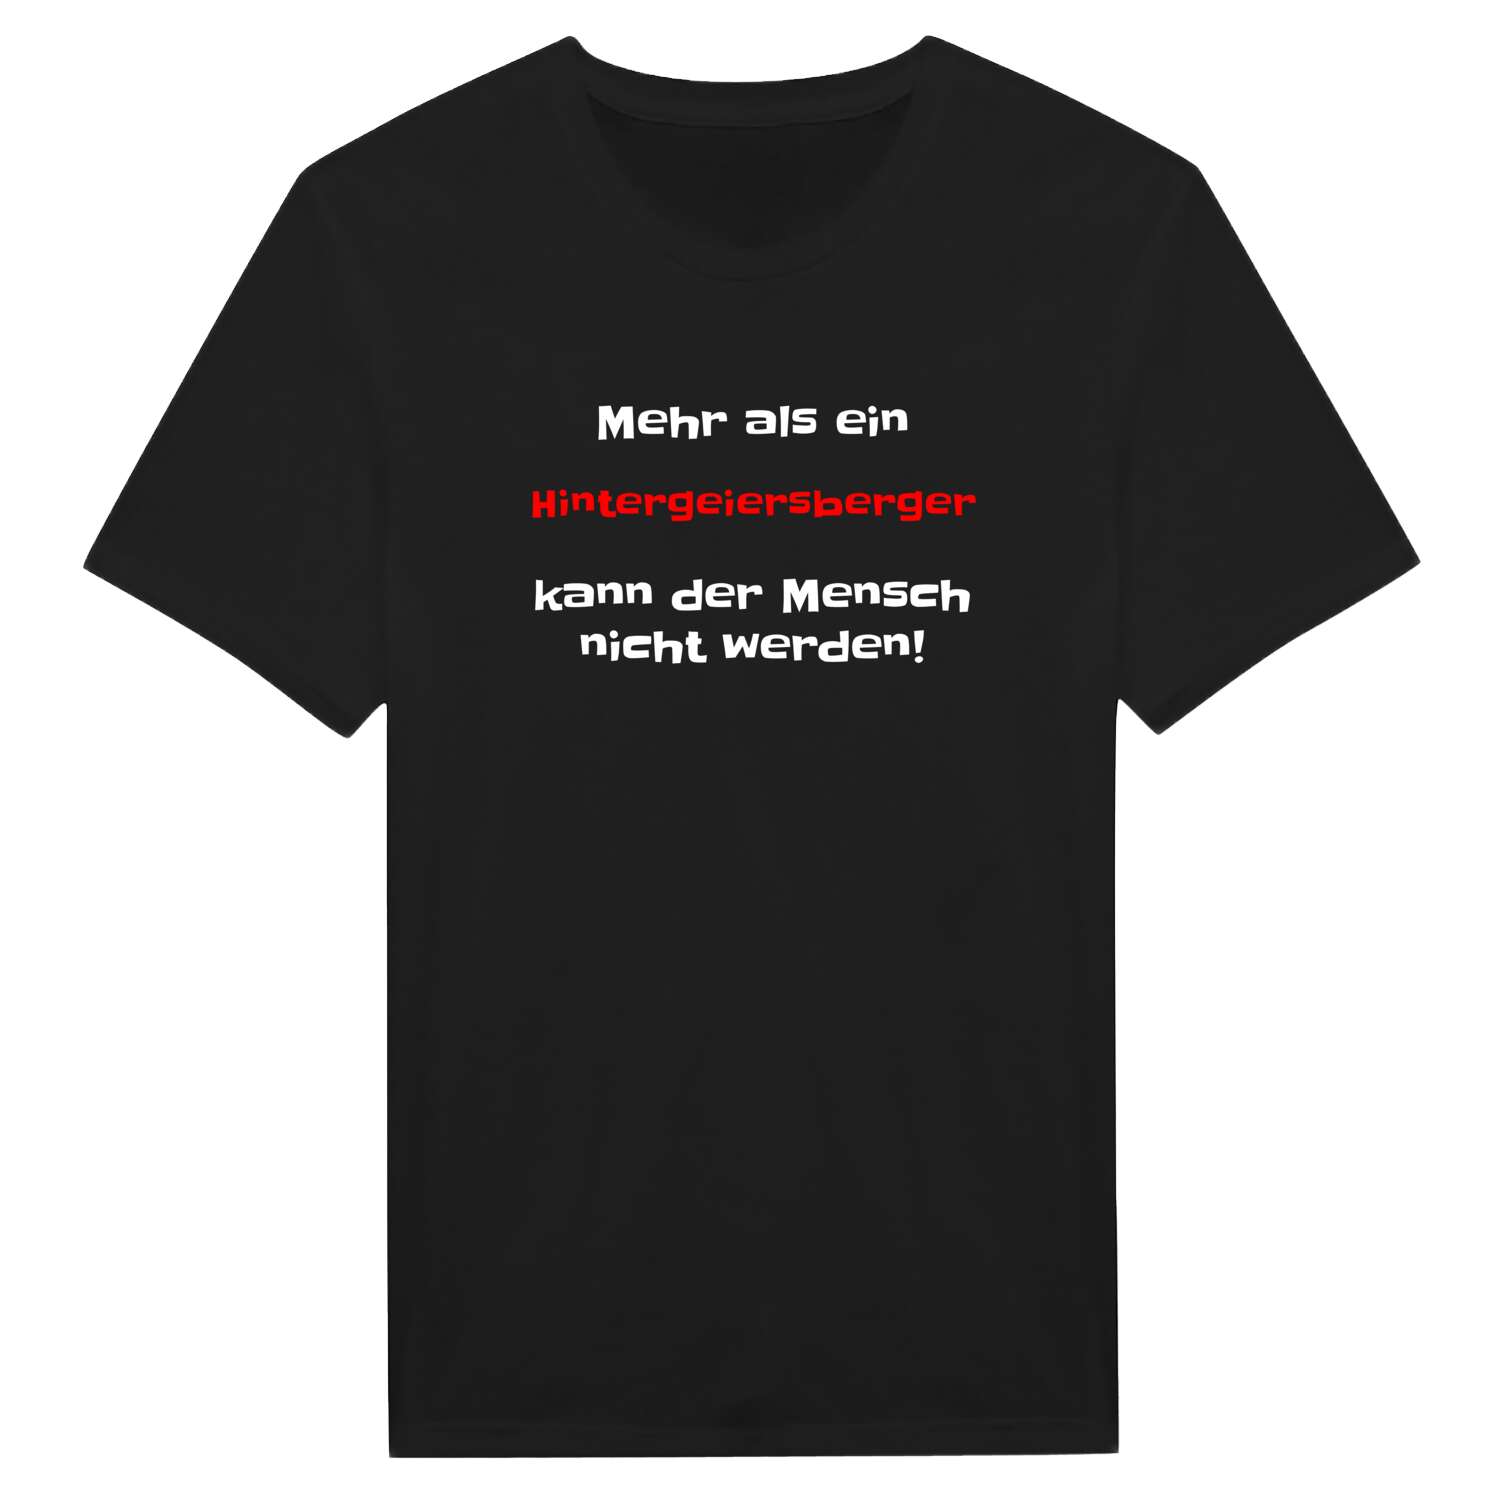 Hintergeiersberg T-Shirt »Mehr als ein«